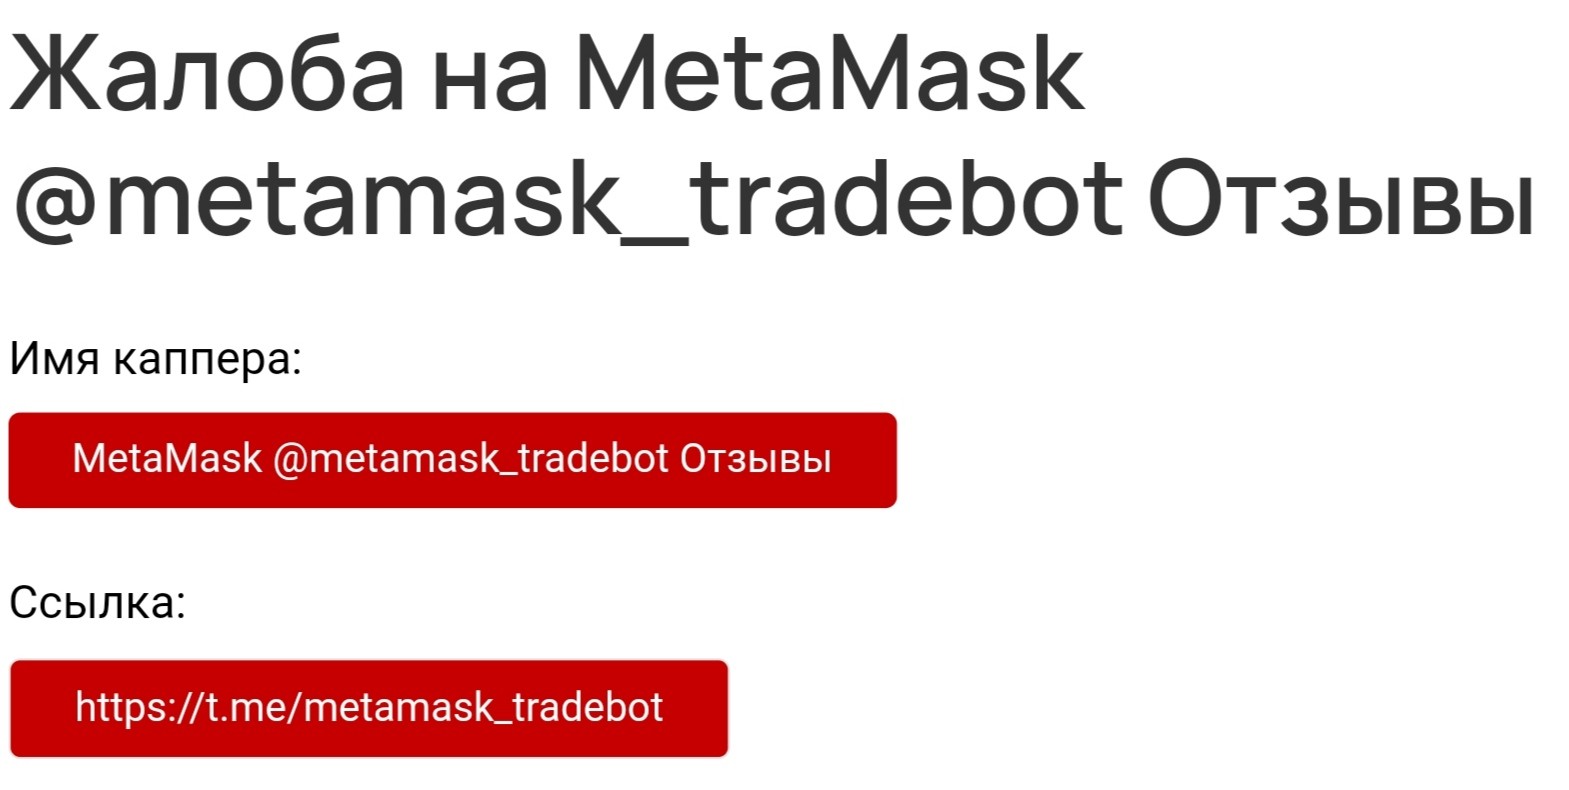 Metamask Tradebot отзывы